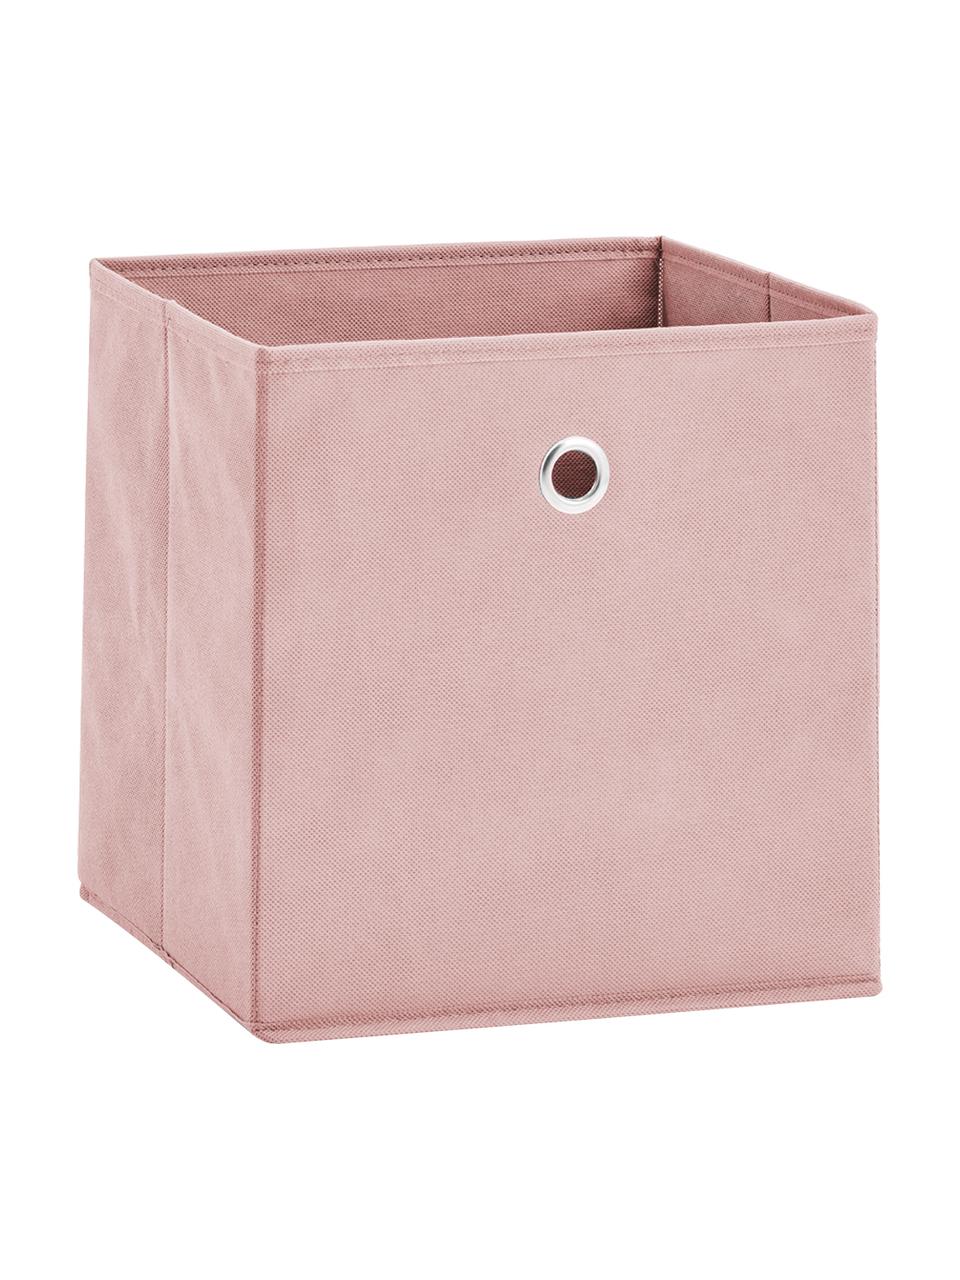 Aufbewahrungsbox Lisa, Bezug: Vlies, Gestell: Pappe, Metall, Rosa, B 28 x H 28 cm